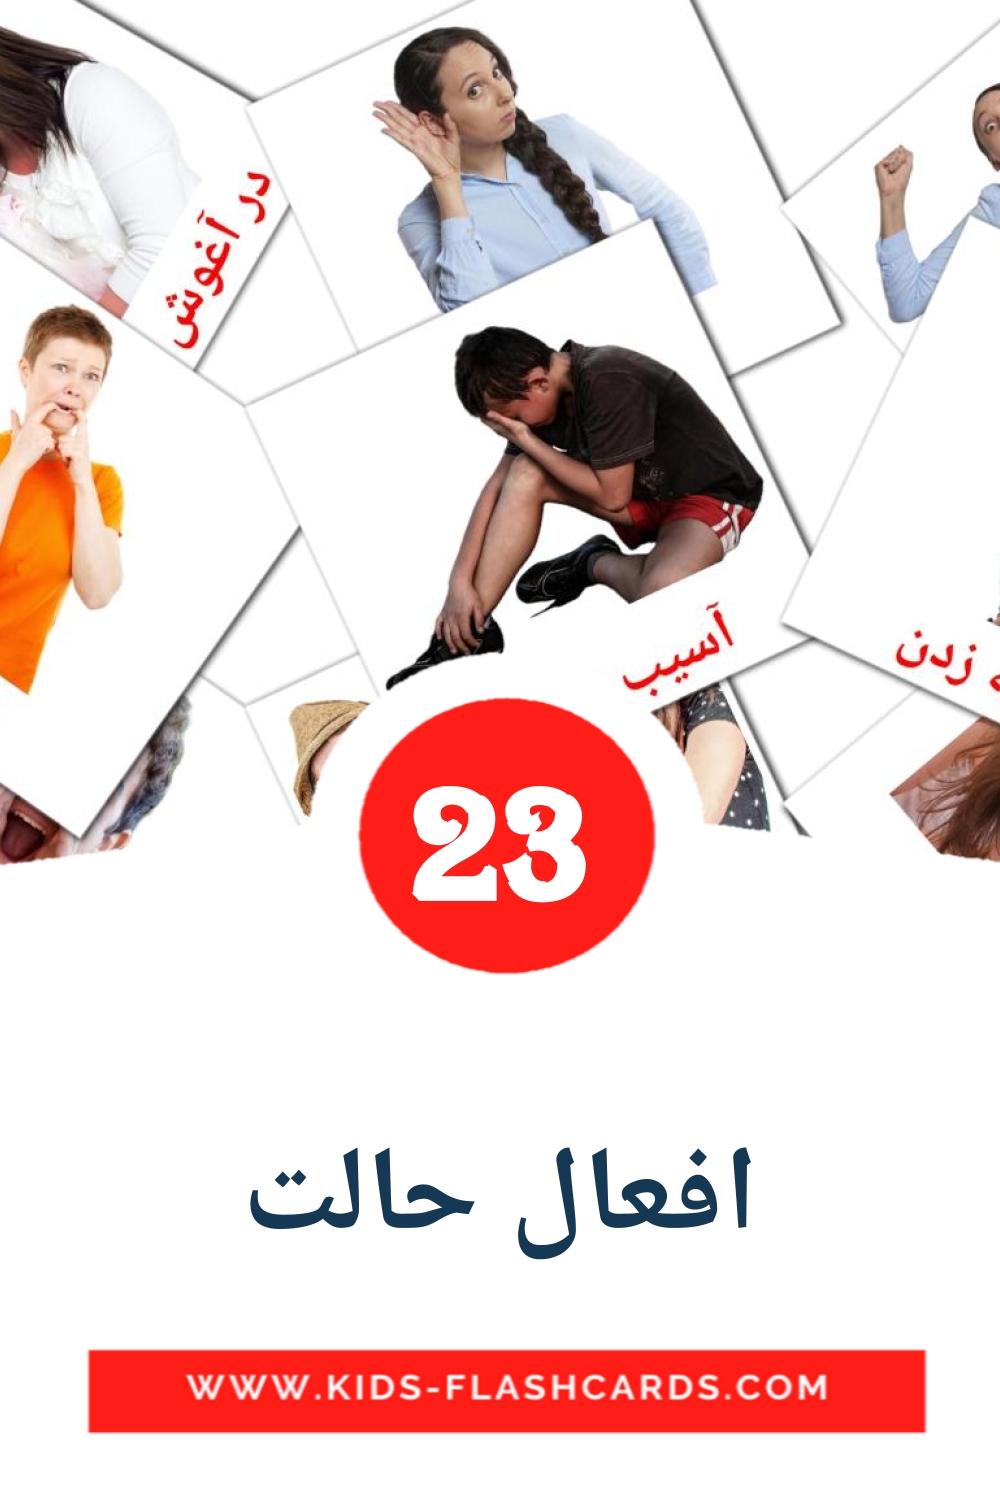 23 tarjetas didacticas de افعال حالت para el jardín de infancia en persa